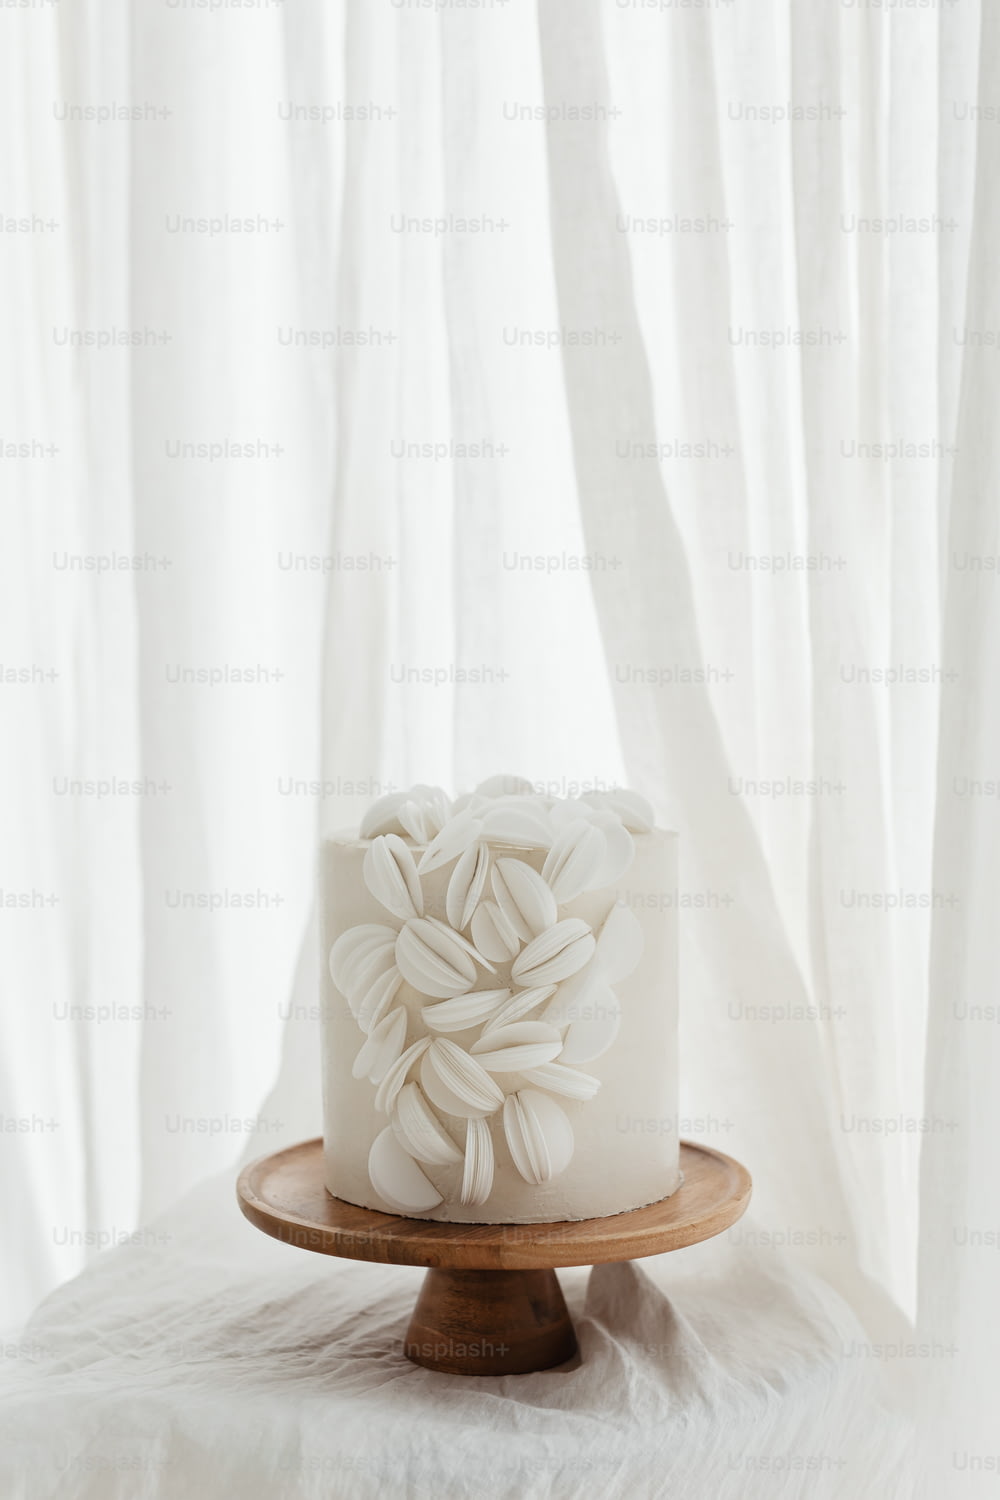 Ein weißer Kuchen sitzt auf einem Holzteller